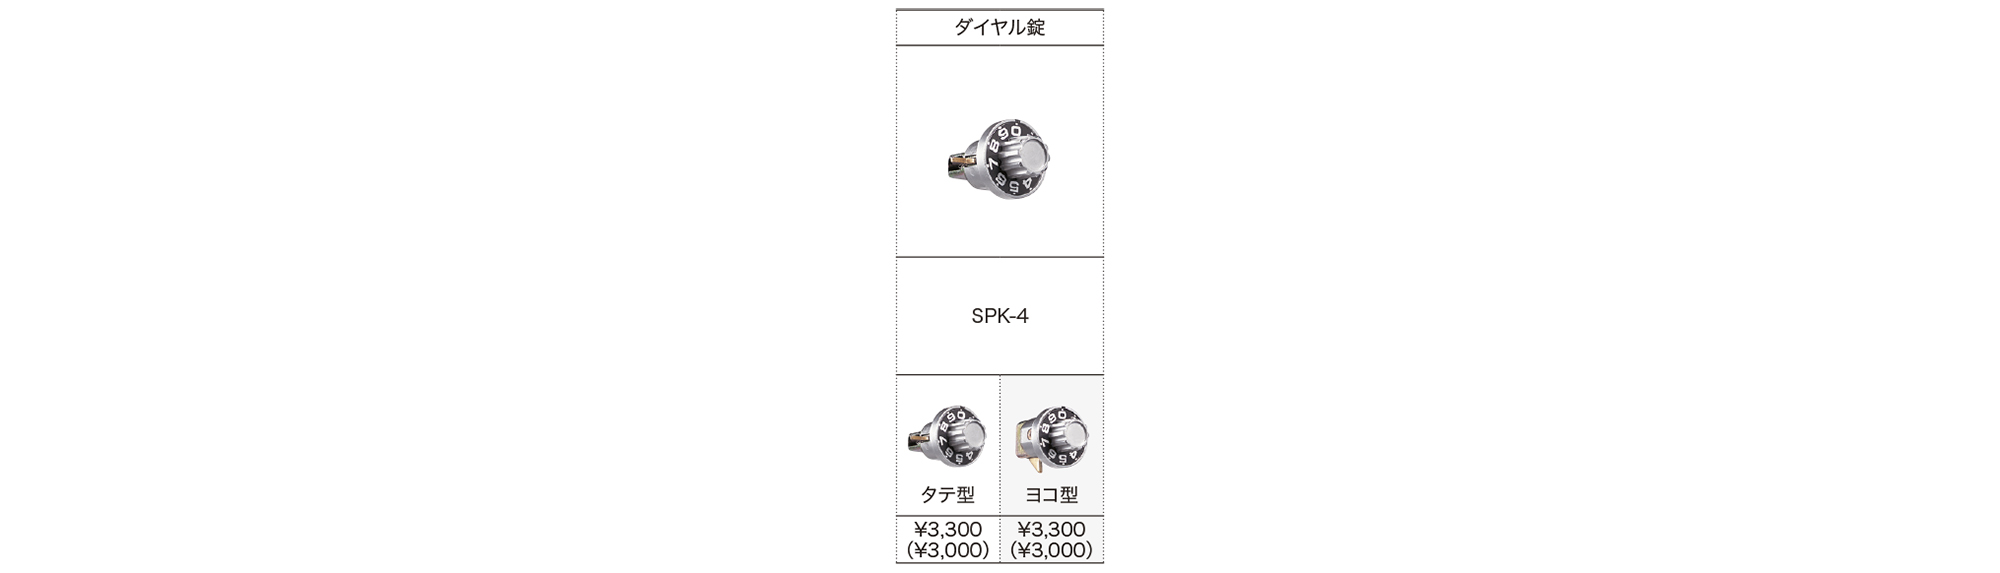 ダイヤル錠 SPK-4 | ポスト | 製品情報 | 株式会社ナスタ